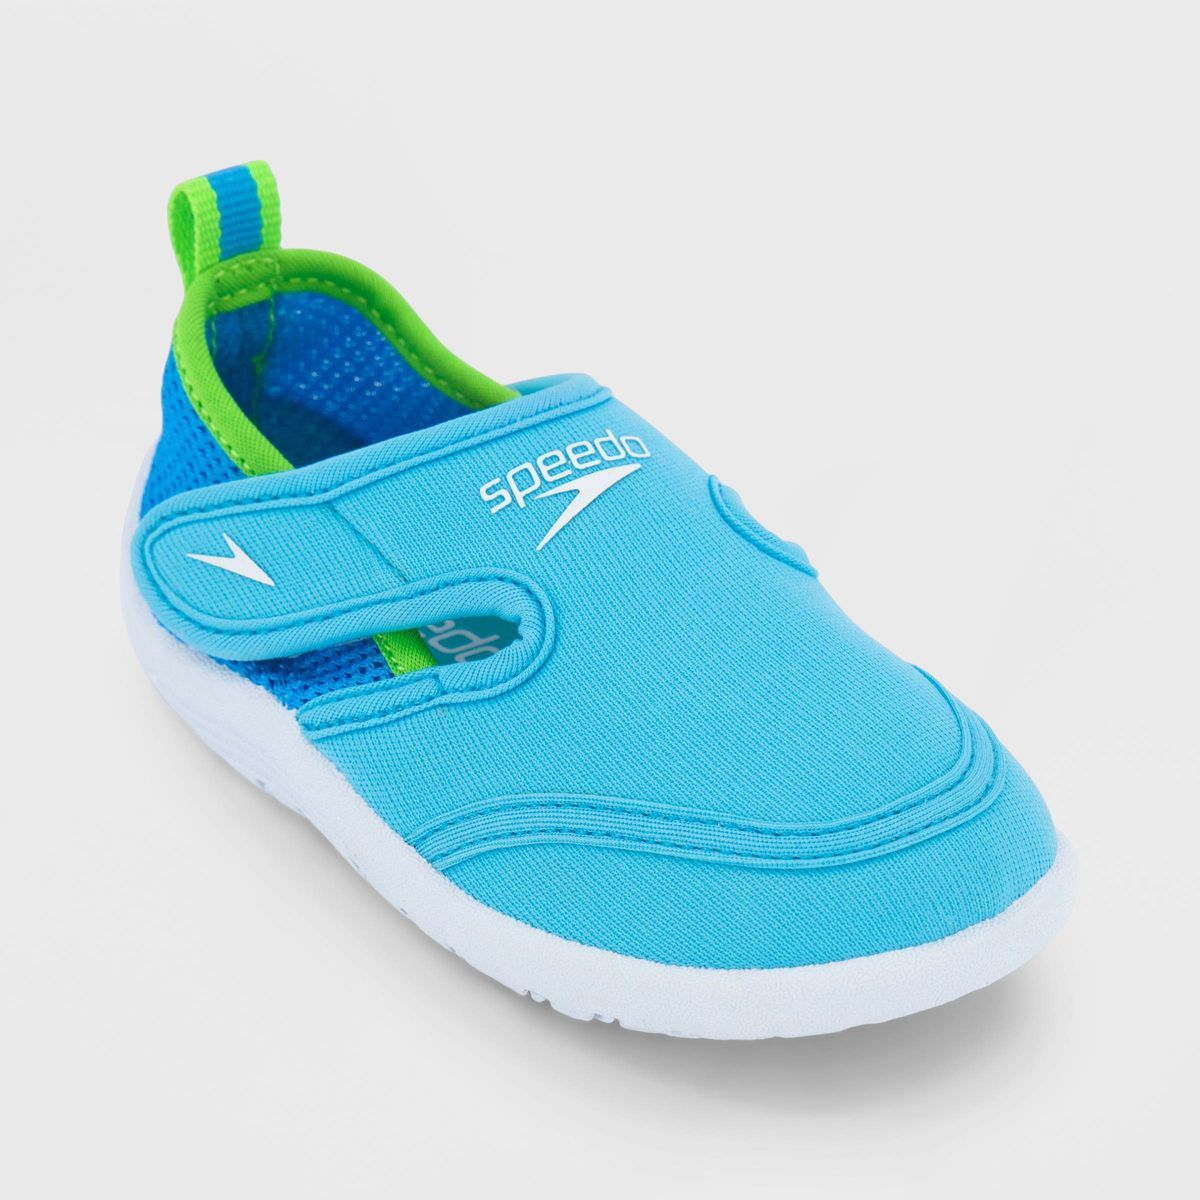 Speedo Toddler Hybrid Water Shoes | Target